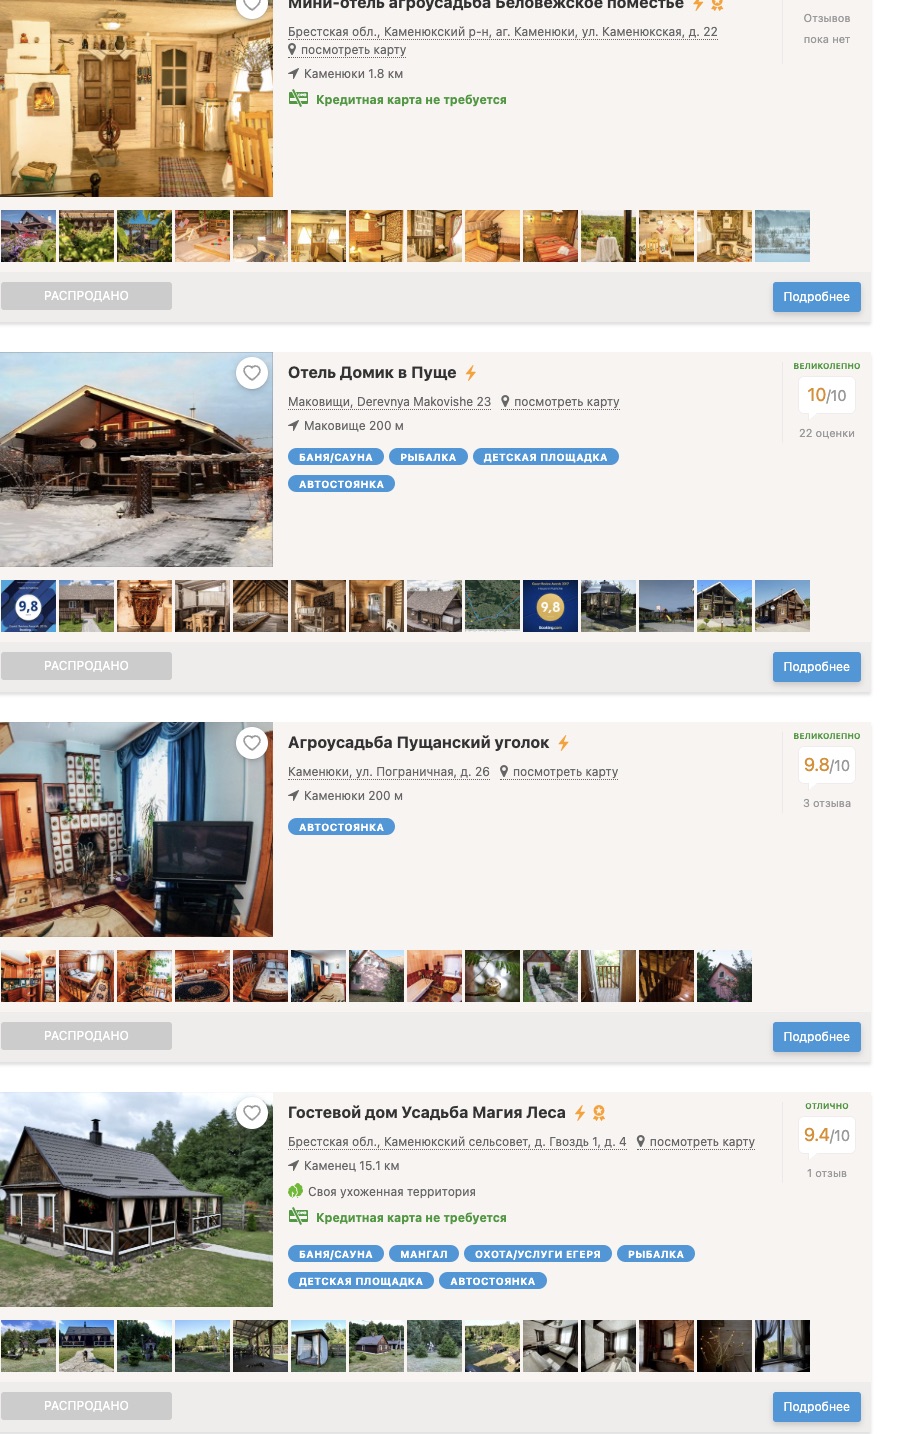 Так выглядит страница одного из сайтов с усадьбами около Беловежской пущи. Все жилье распродано. Фото: 101hotels.com